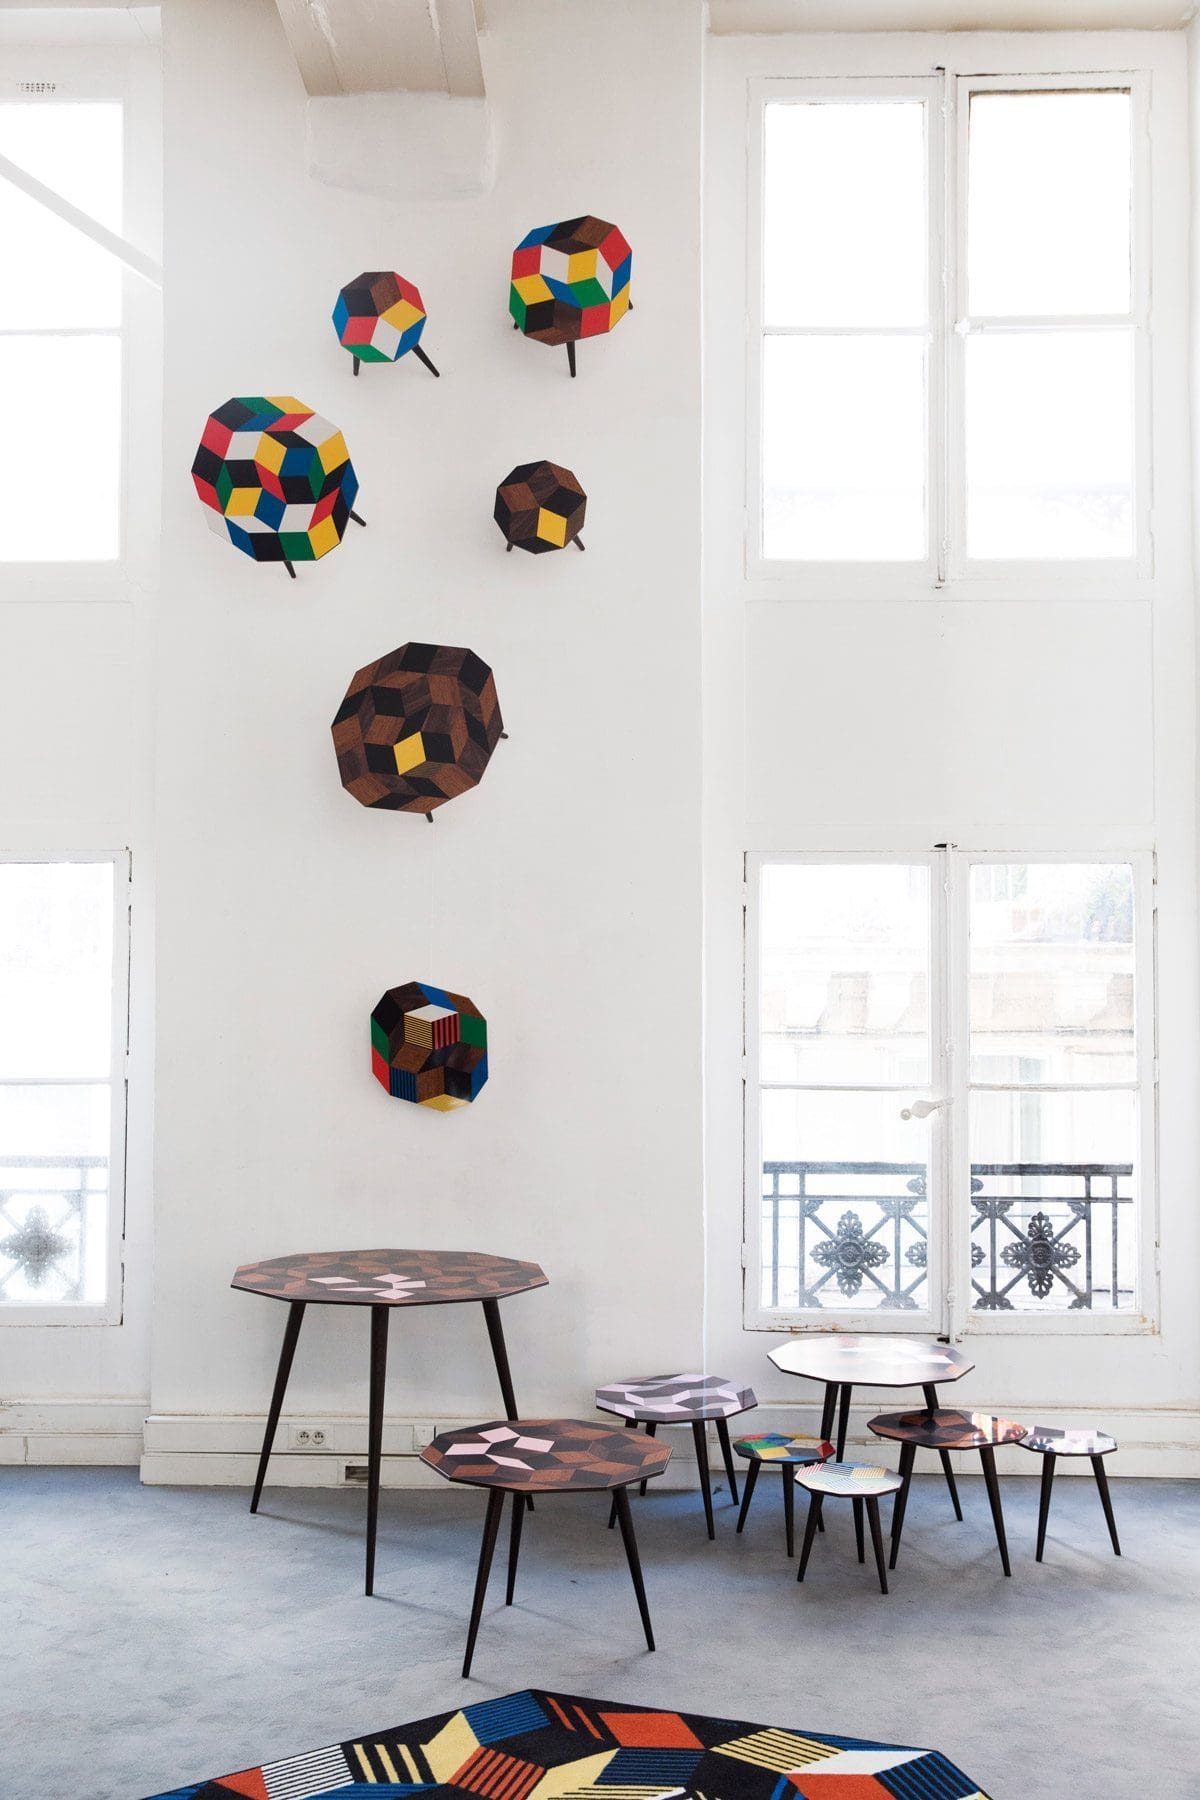 Exposition Penrose Project, Ich&Kar - Bazartherapy, Paris Design Week 2015, tables basses et guéridon au motifs géométrique